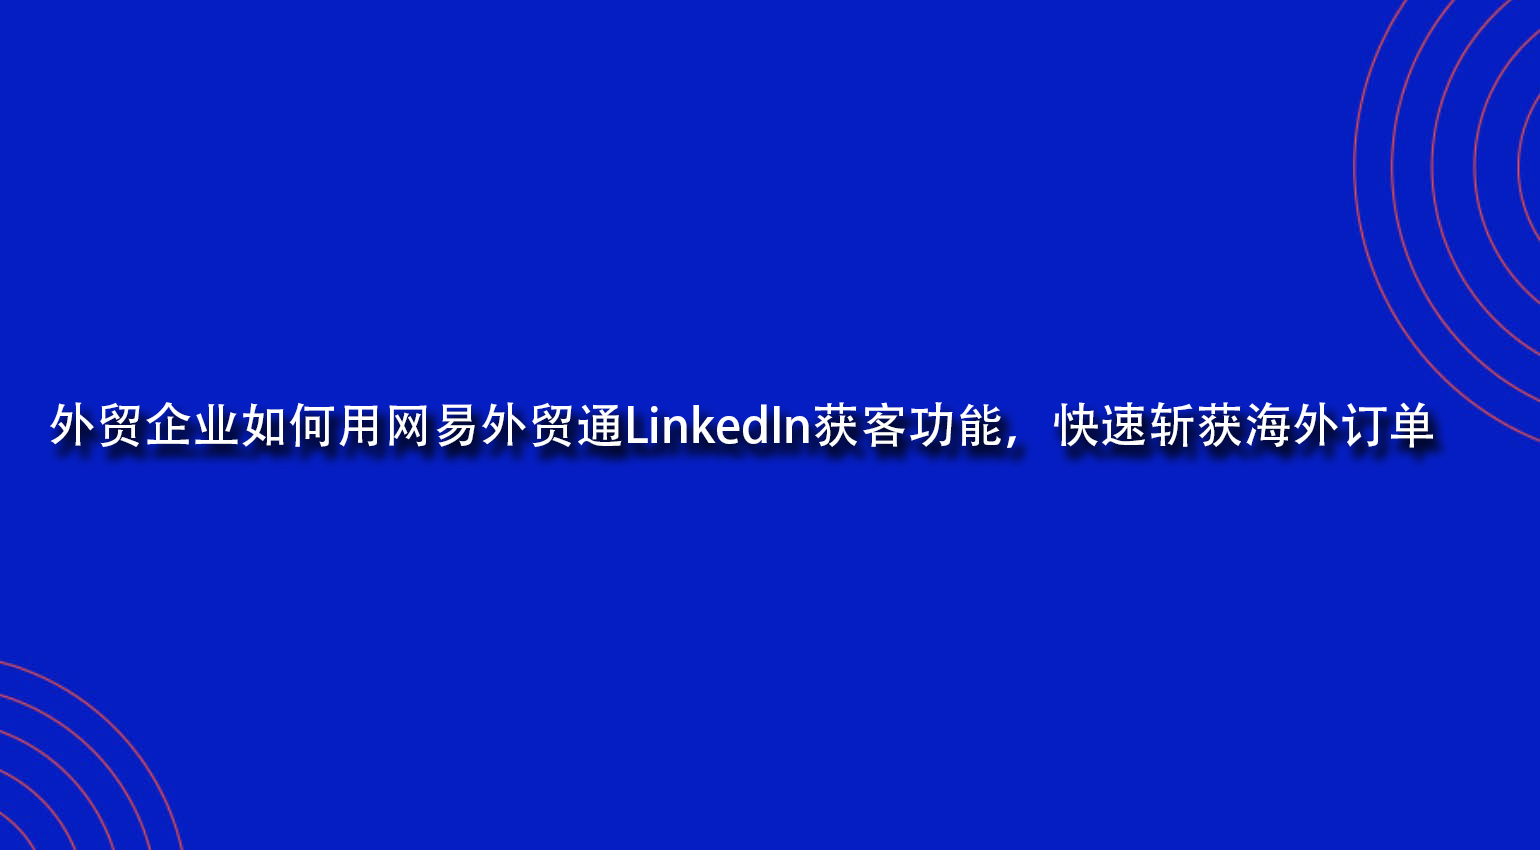 外贸企业如何用网易外贸通LinkedIn获客功能，快速斩获海外订单.jpg